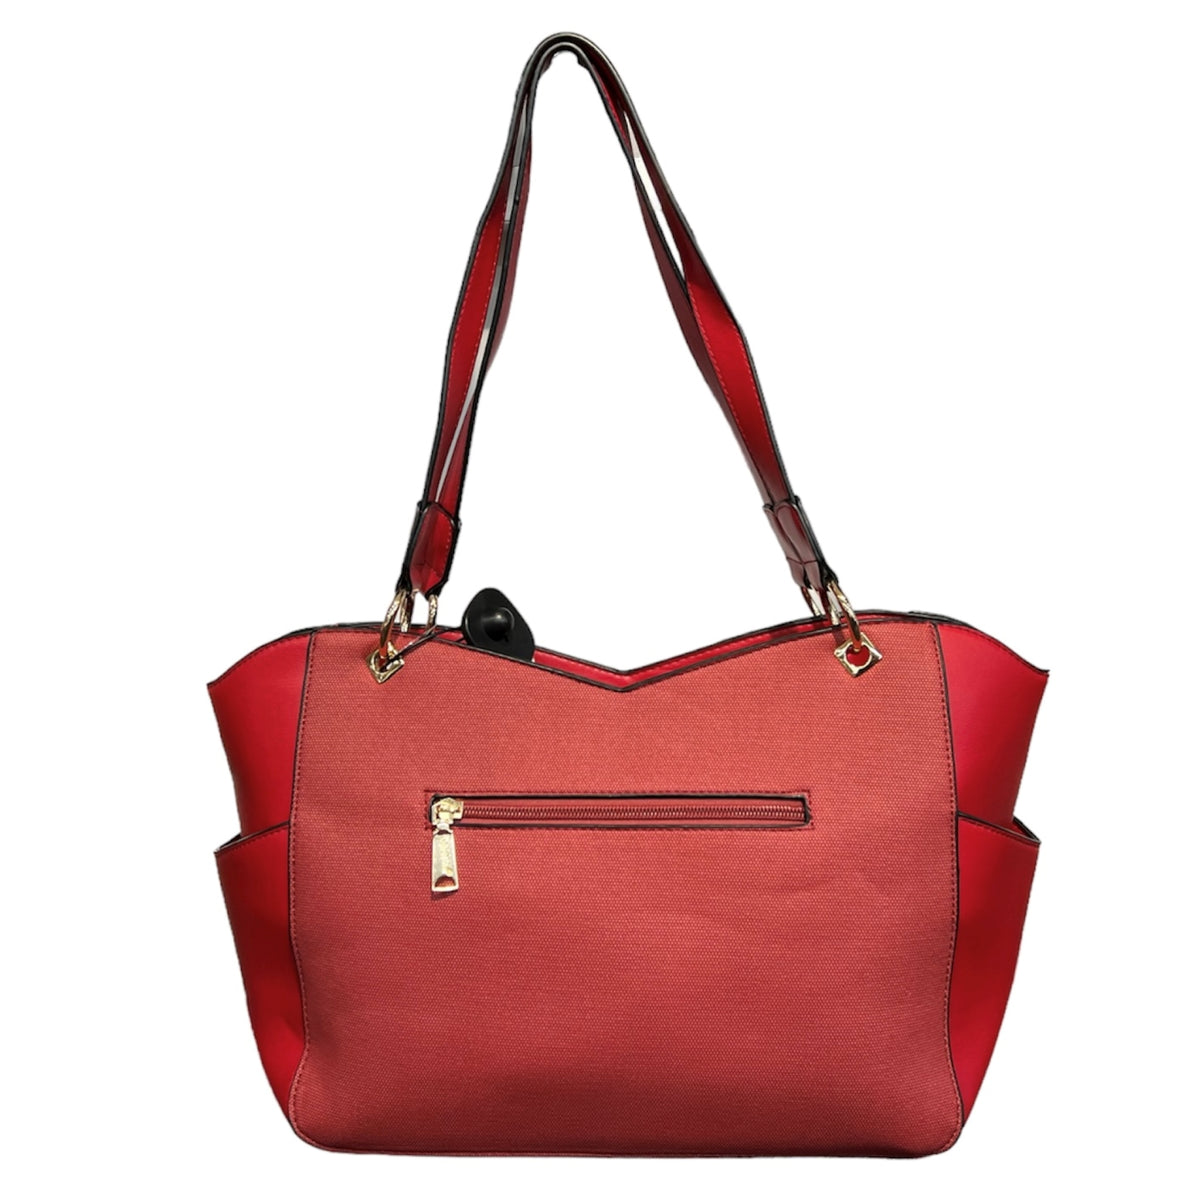 Ce sac femme en couleur bourgogne de la marque BOSALINA est un compagnon idéal pour toutes vos sorties. Avec ses nombreuses poches, ce sac à main vous permet de garder tous vos essentiels à portée de main. Son design élégant et intemporel ajoutera une touche de style à n'importe quelle tenue.